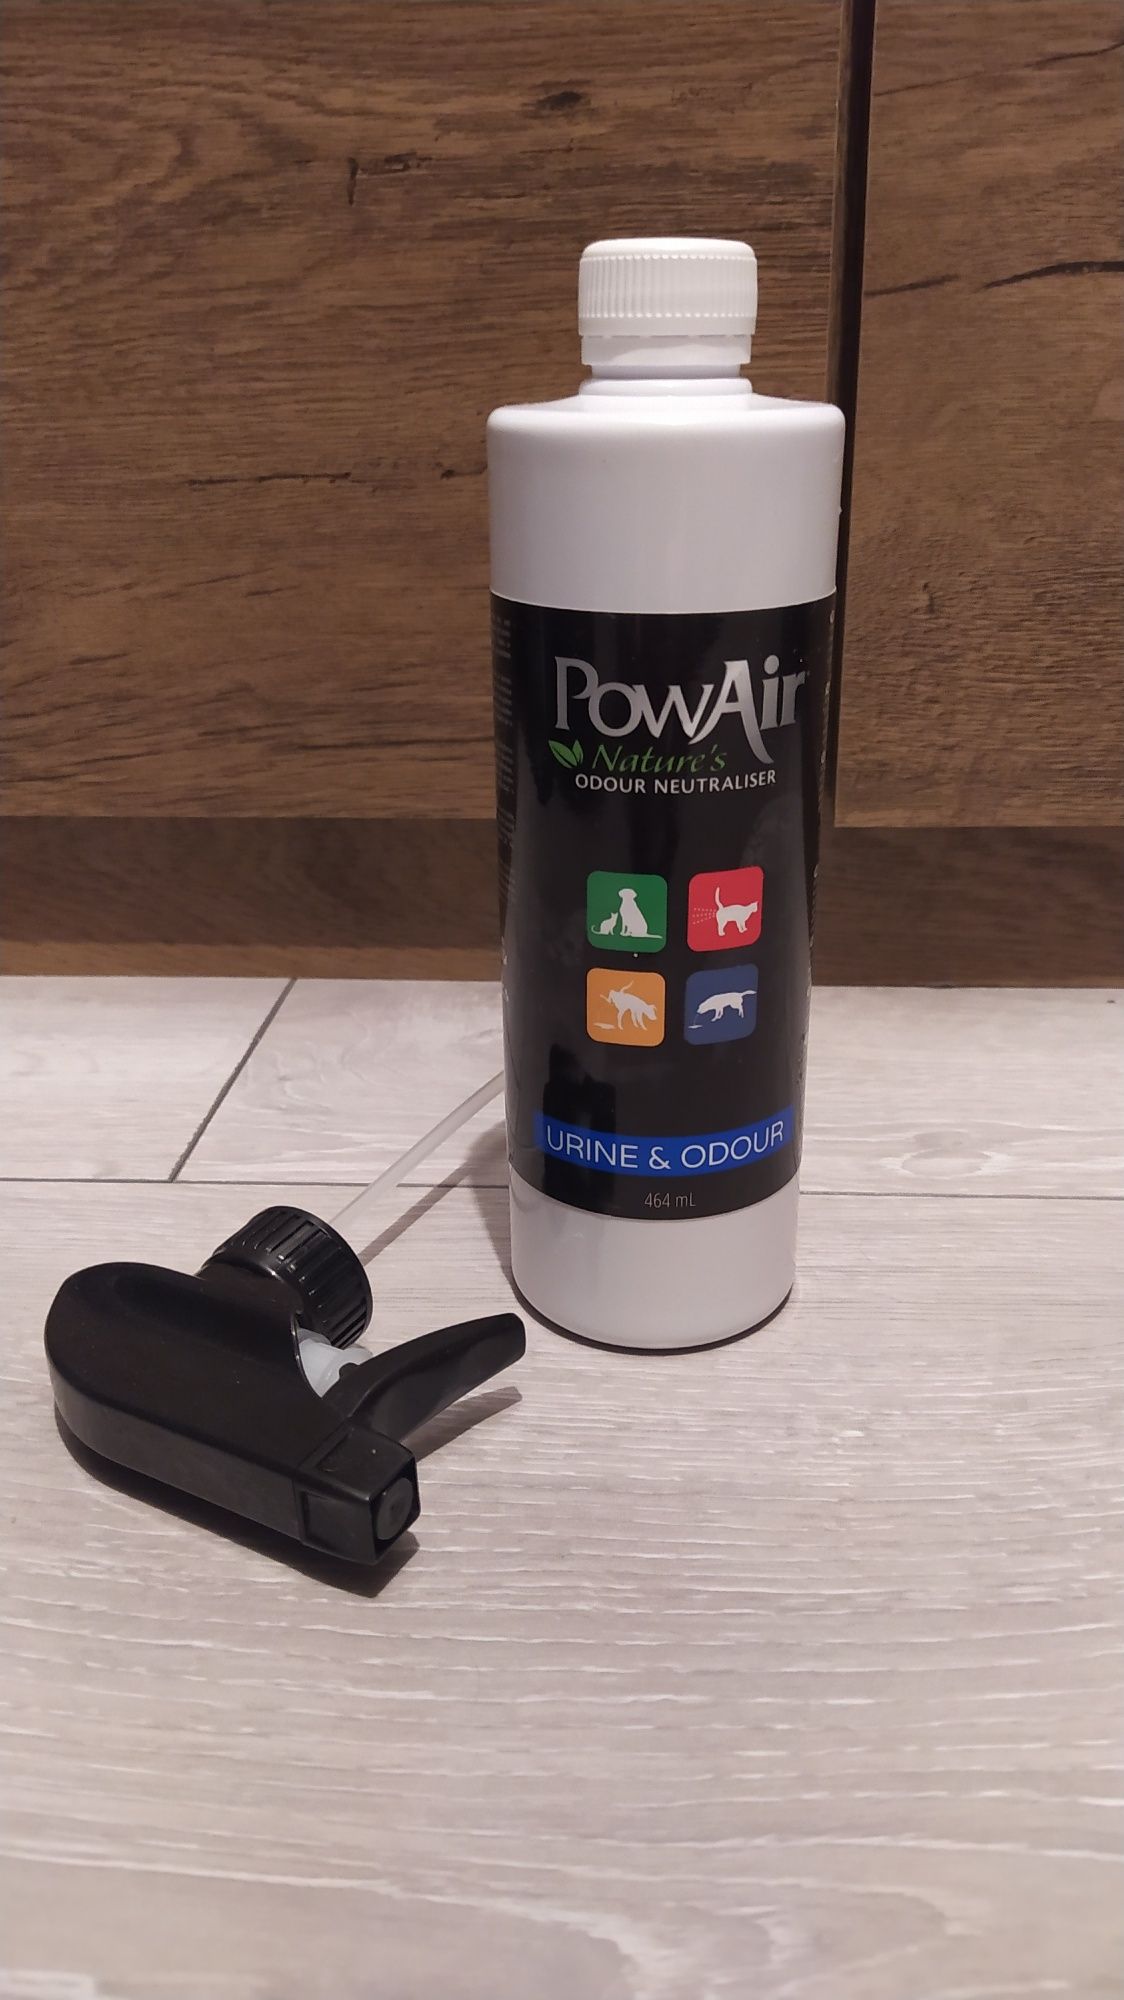 PoweAir neutralizator zapachów 
PowAir Urine & Odour neutralizat onsor